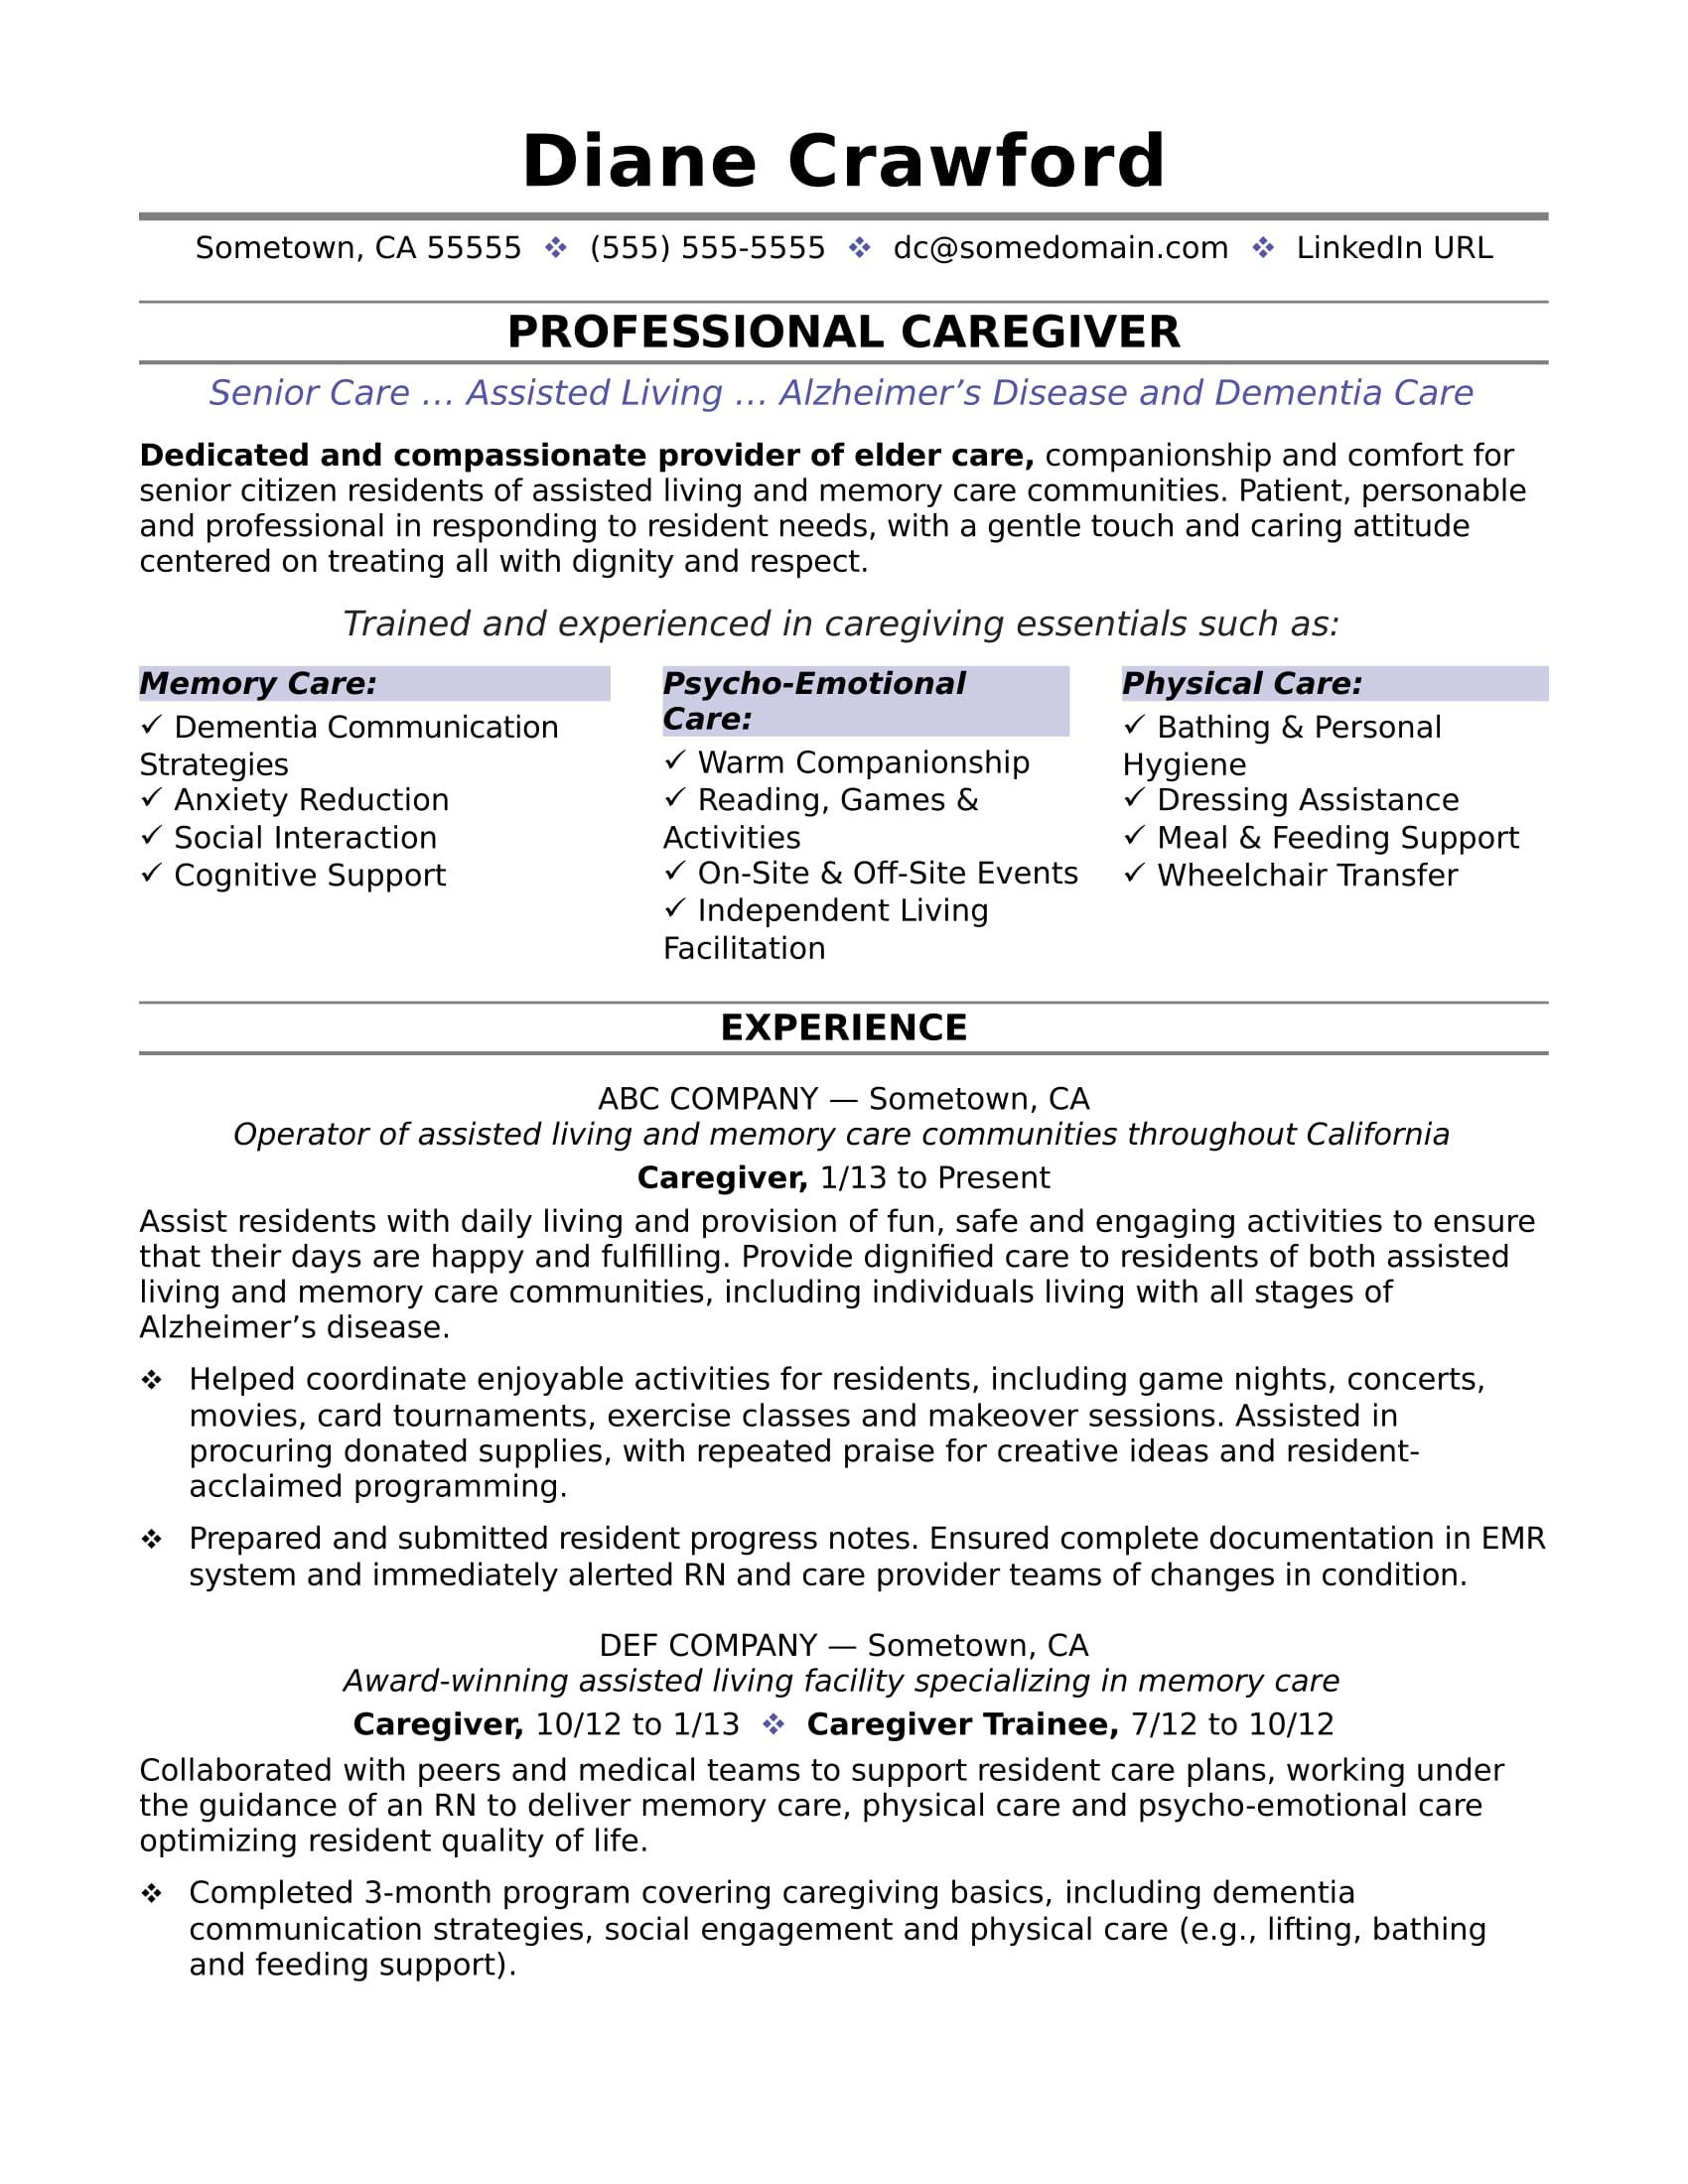 Free Resume Template for Older Worker Caregiver Resume Sample Monster.com